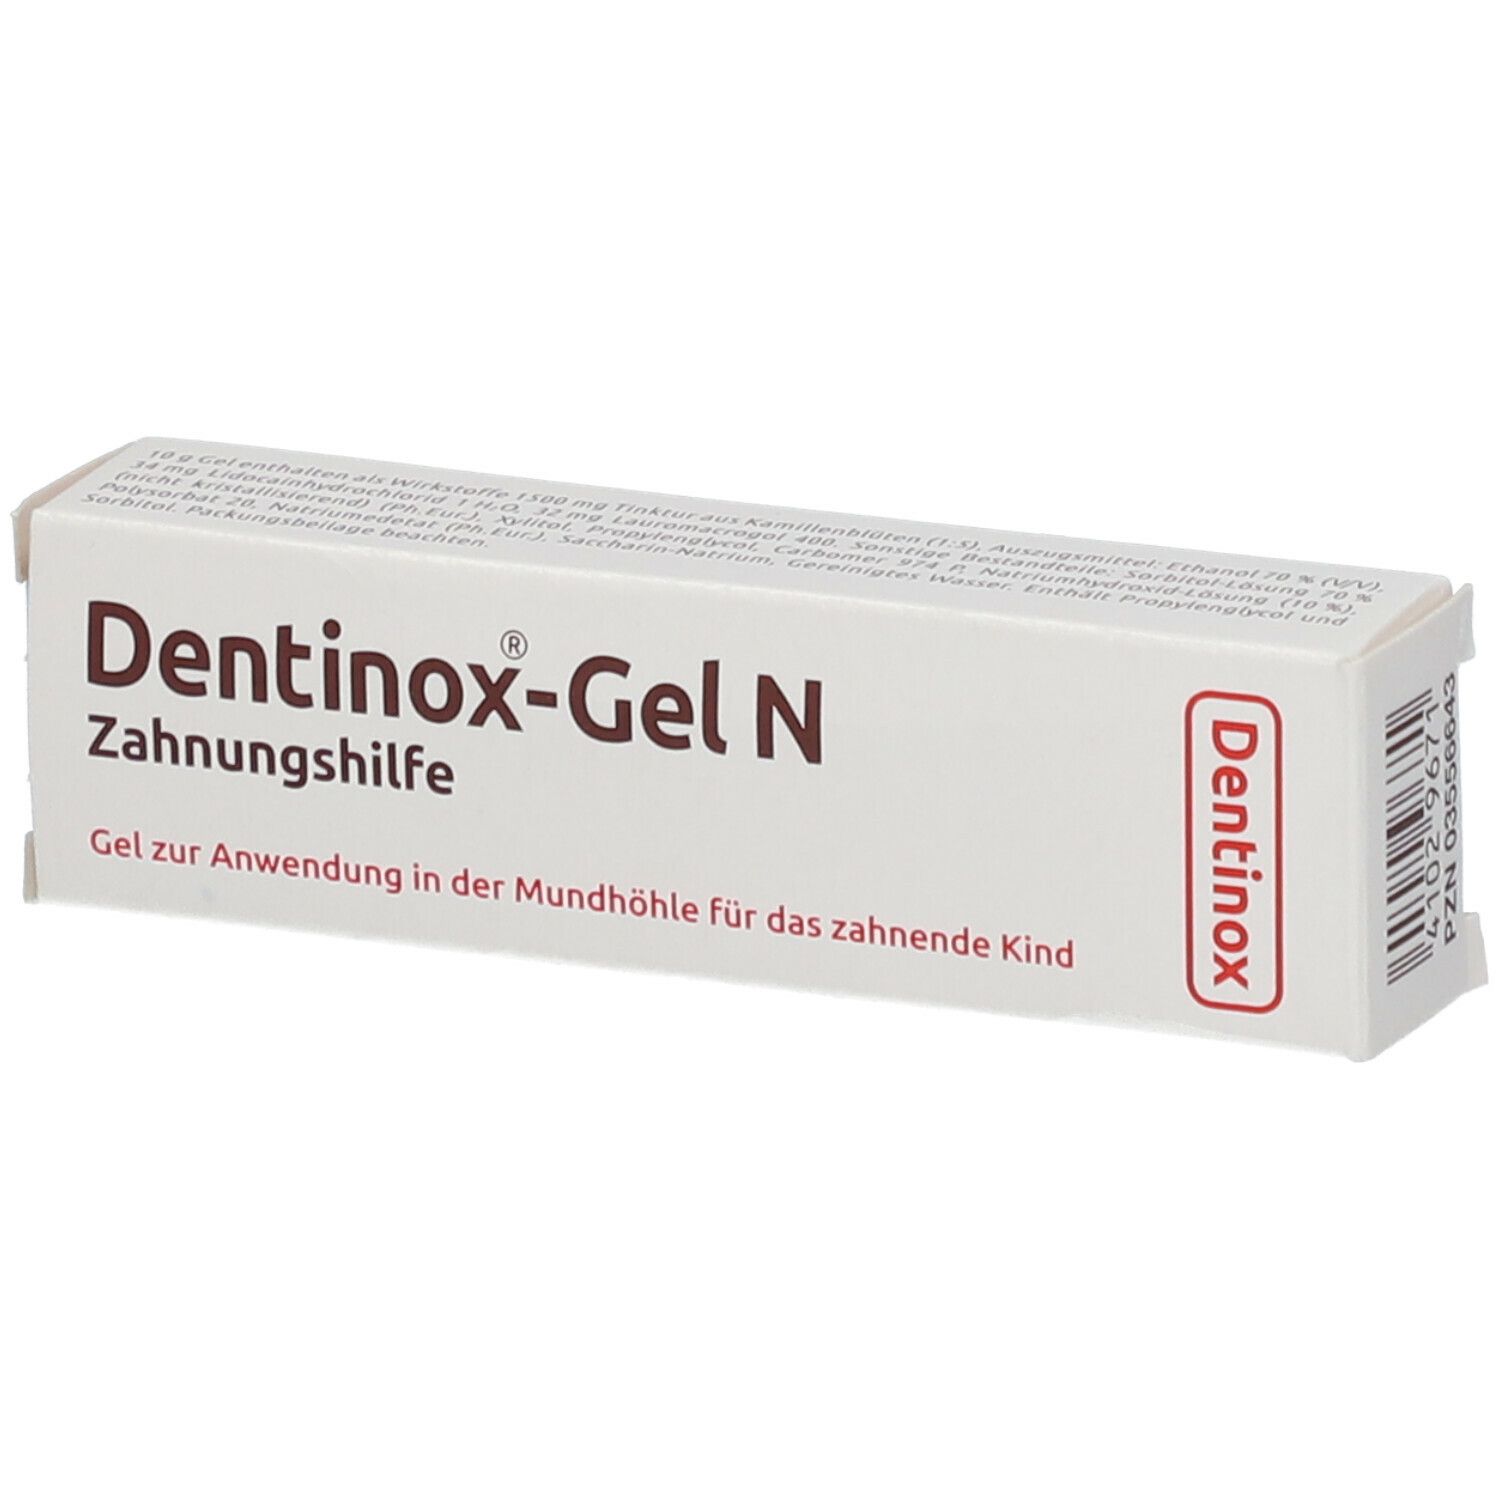 Dentinox®-Gel N Zahnungshilfe